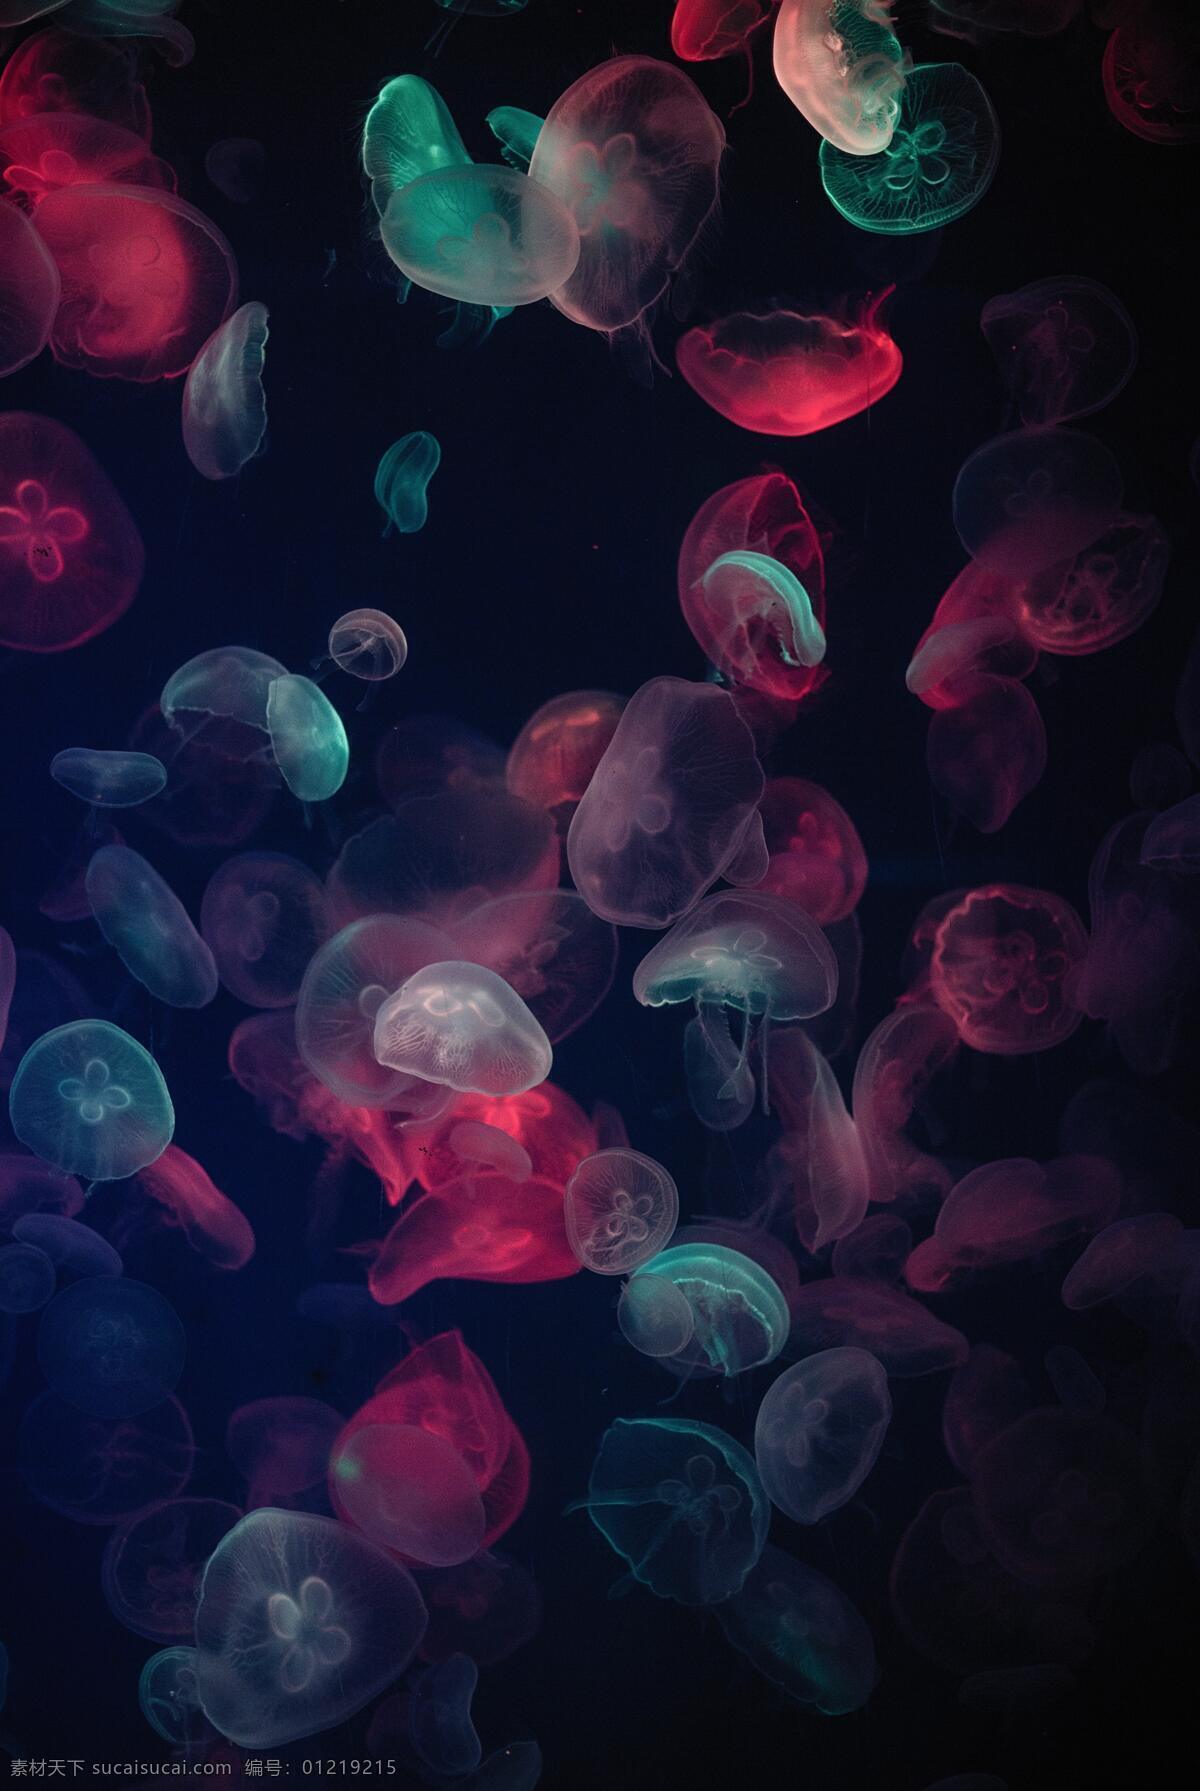 浪漫水母 魔幻七彩 水母灯光 迷你小水母 黑色背景 自然景观 海洋生物 水族馆 生物世界